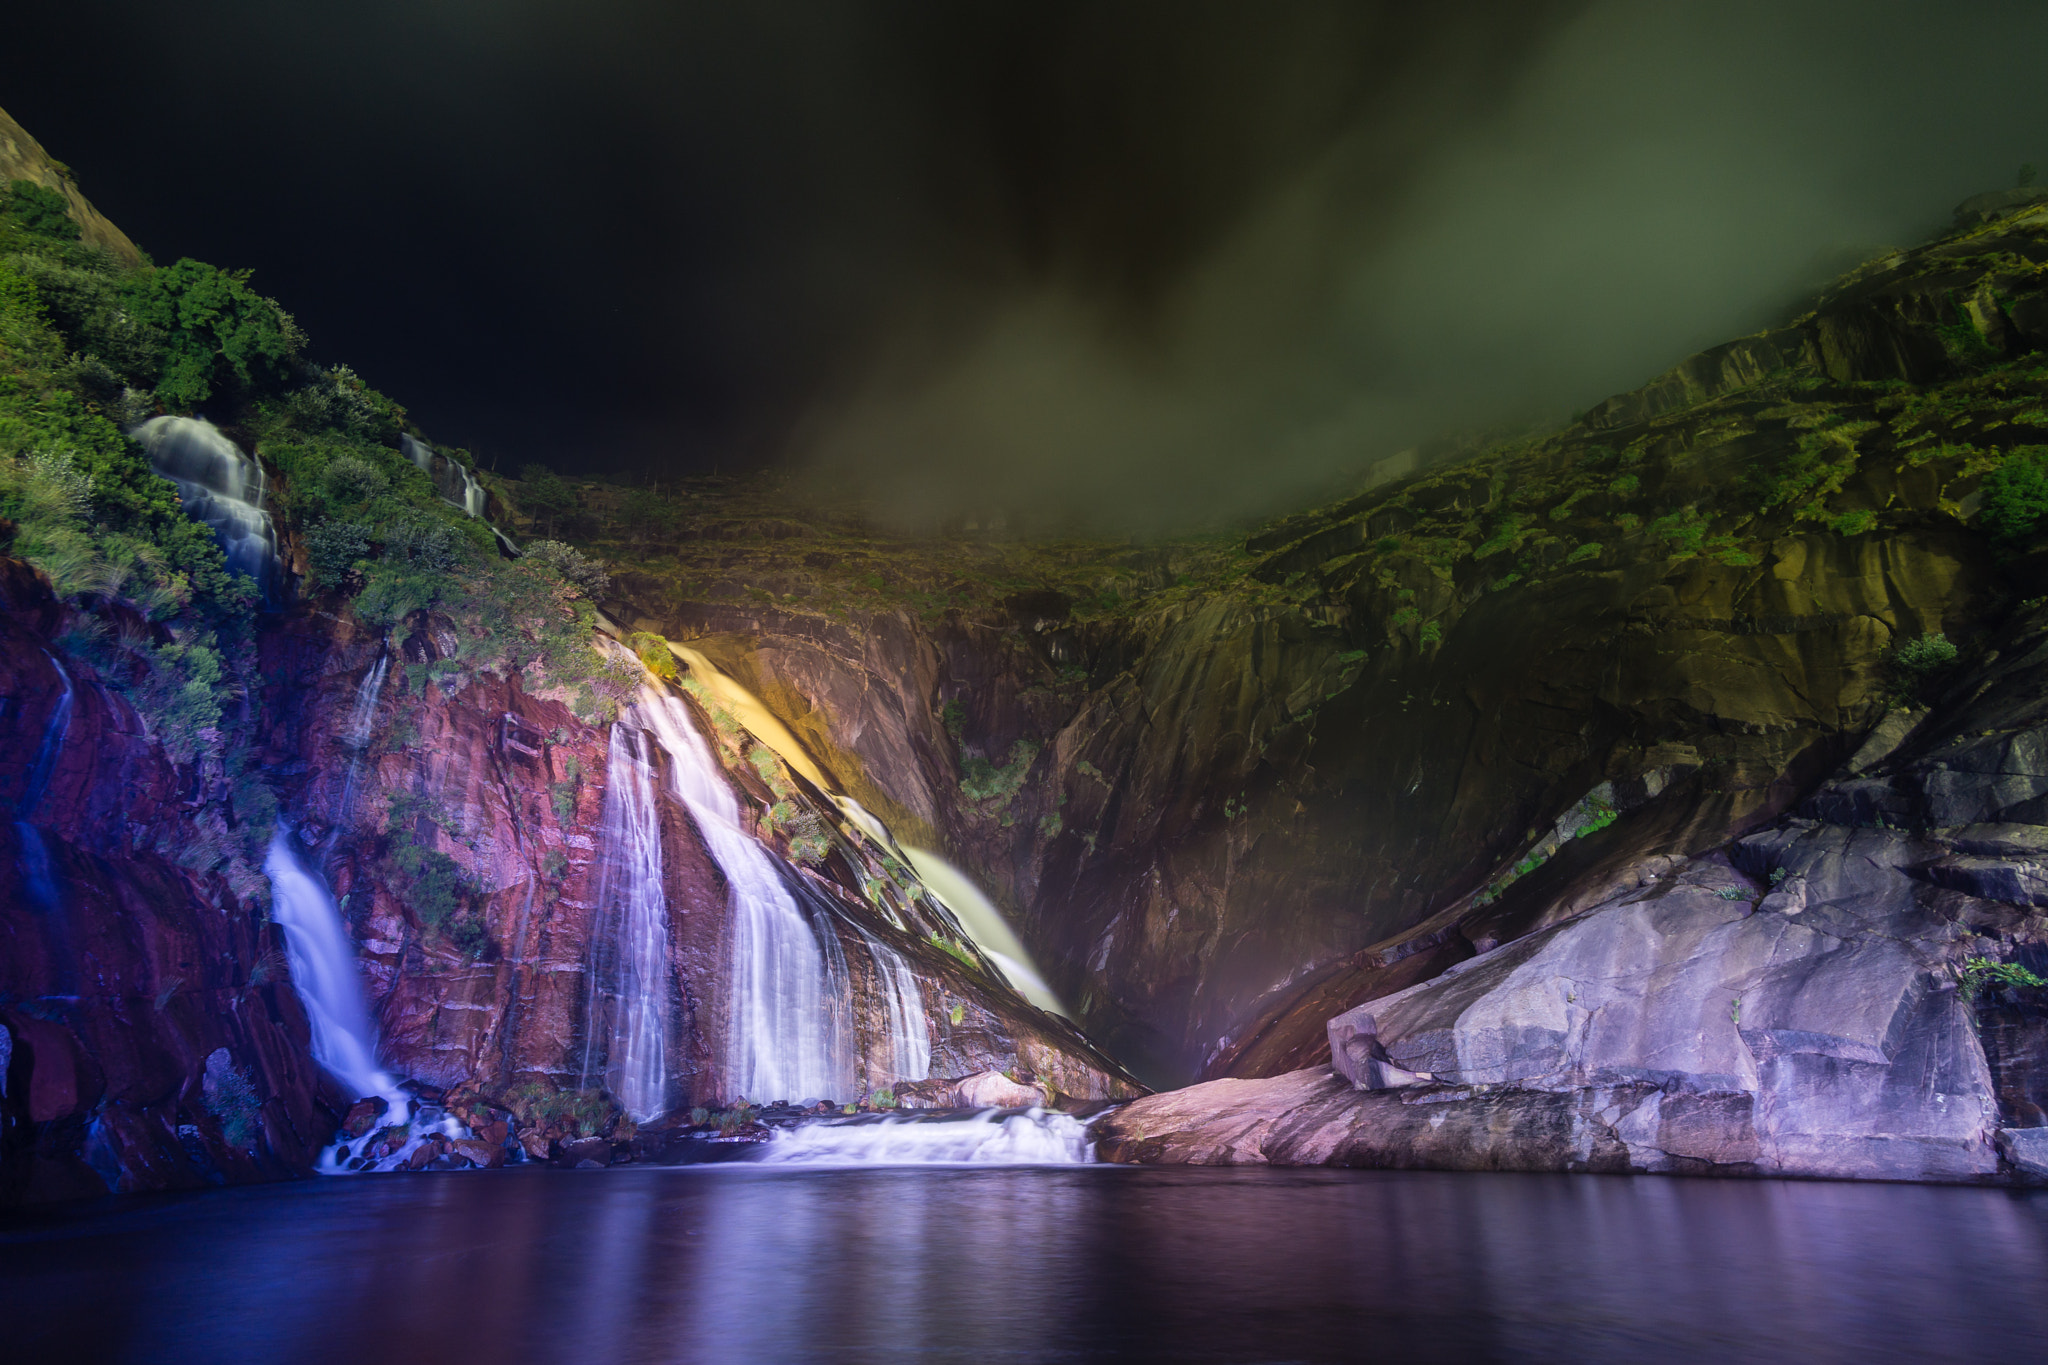 Samyang 12mm F2.0 NCS CS sample photo. Illuminated waterfall photography